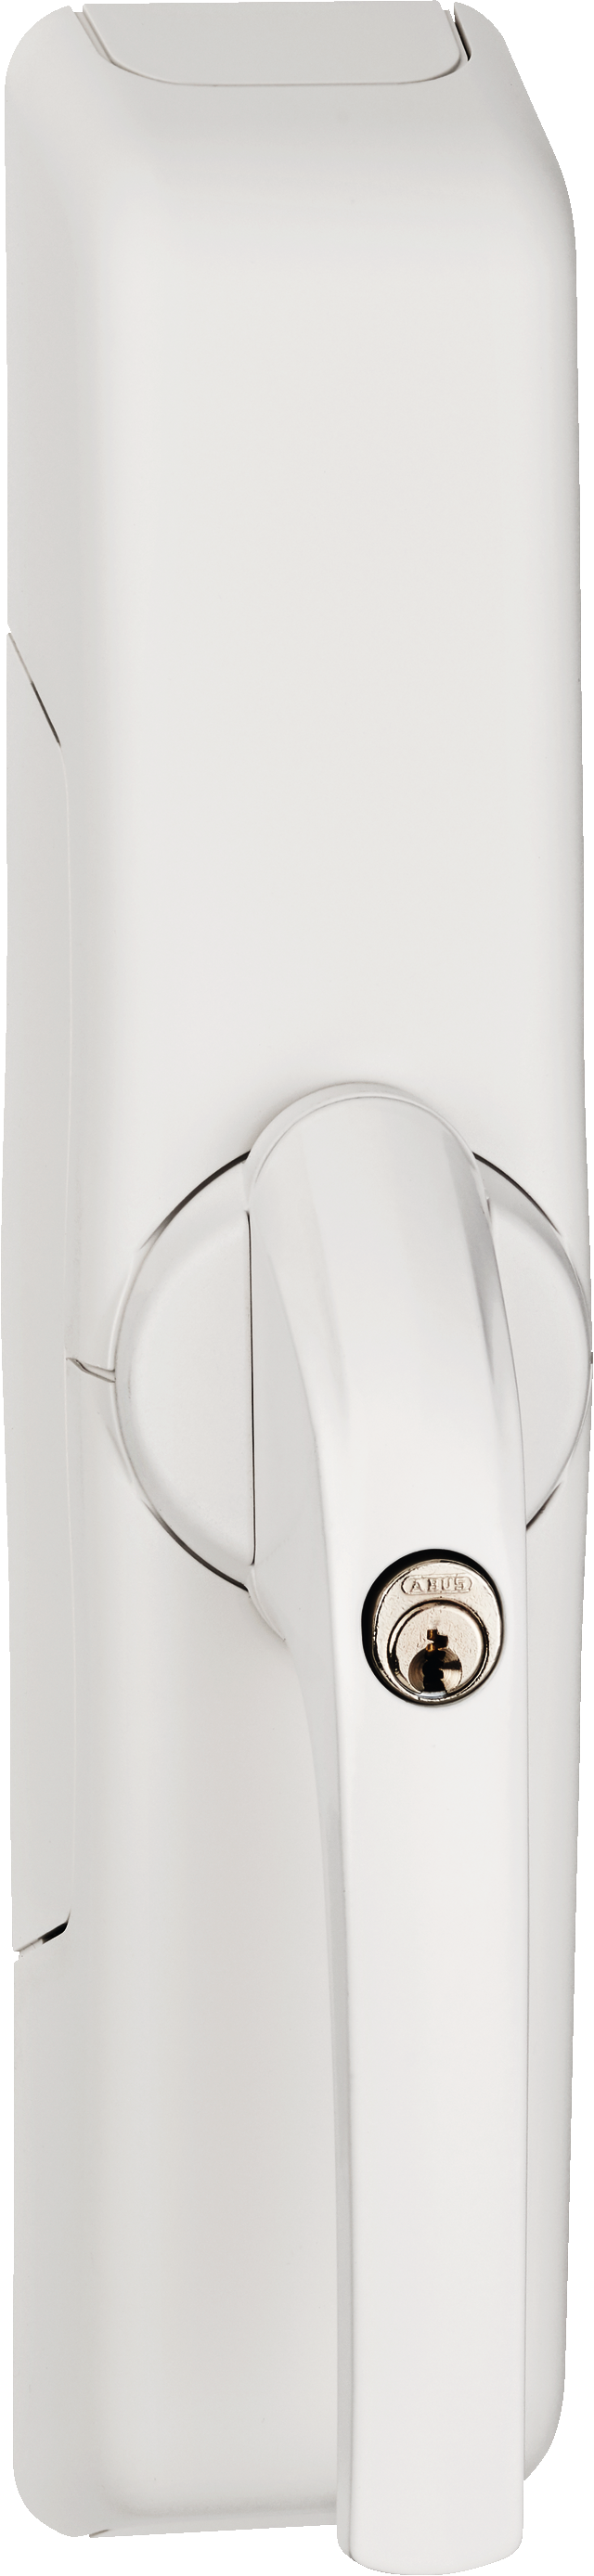 wireless window lock drive HomeTec Pro FCA3000 white oblique front view